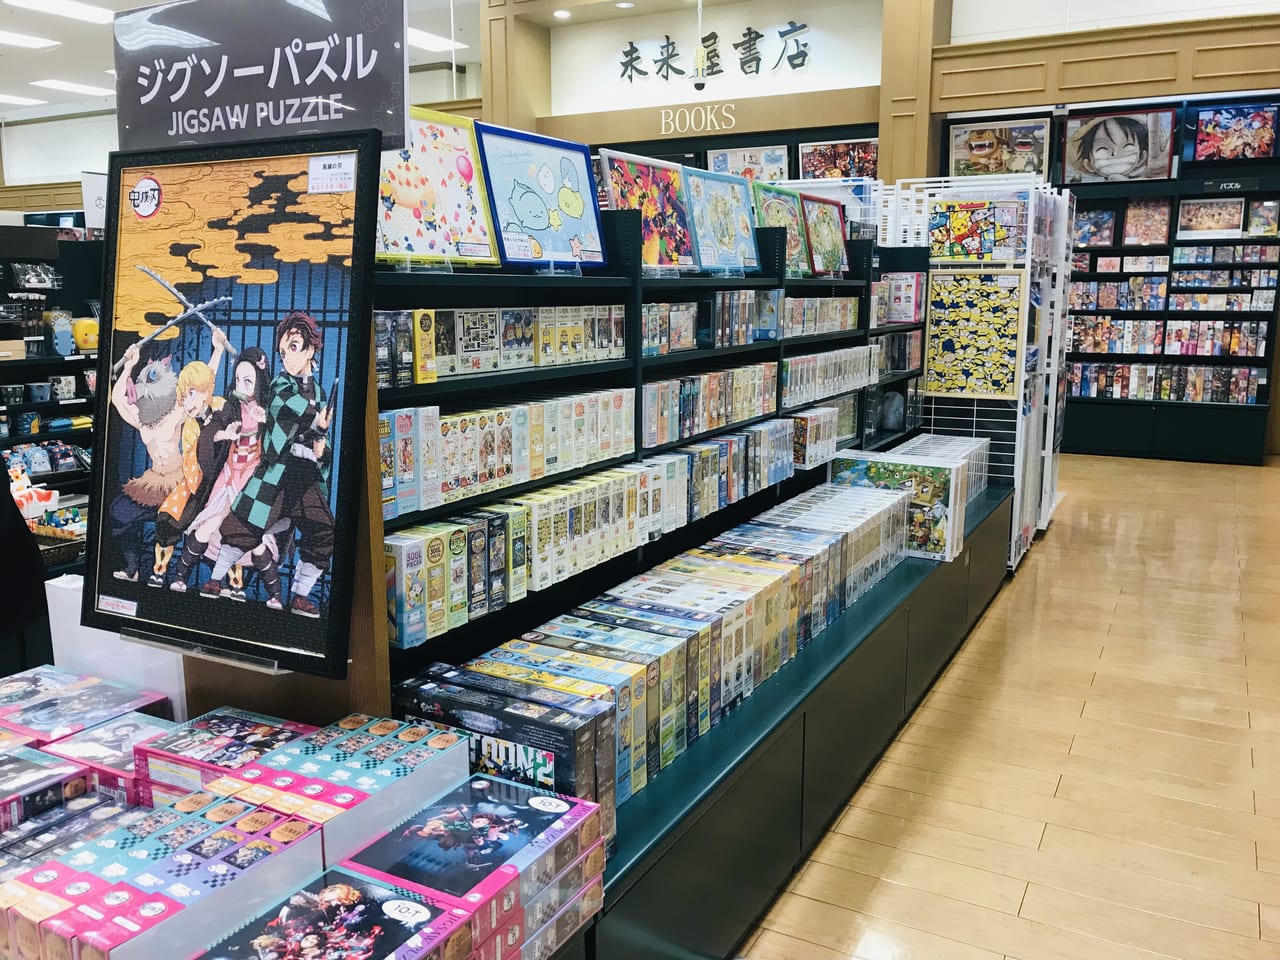 上田市 イオン上田の未来屋書店がリニューアル パズルコーナーがとっても充実しています 号外net 上田